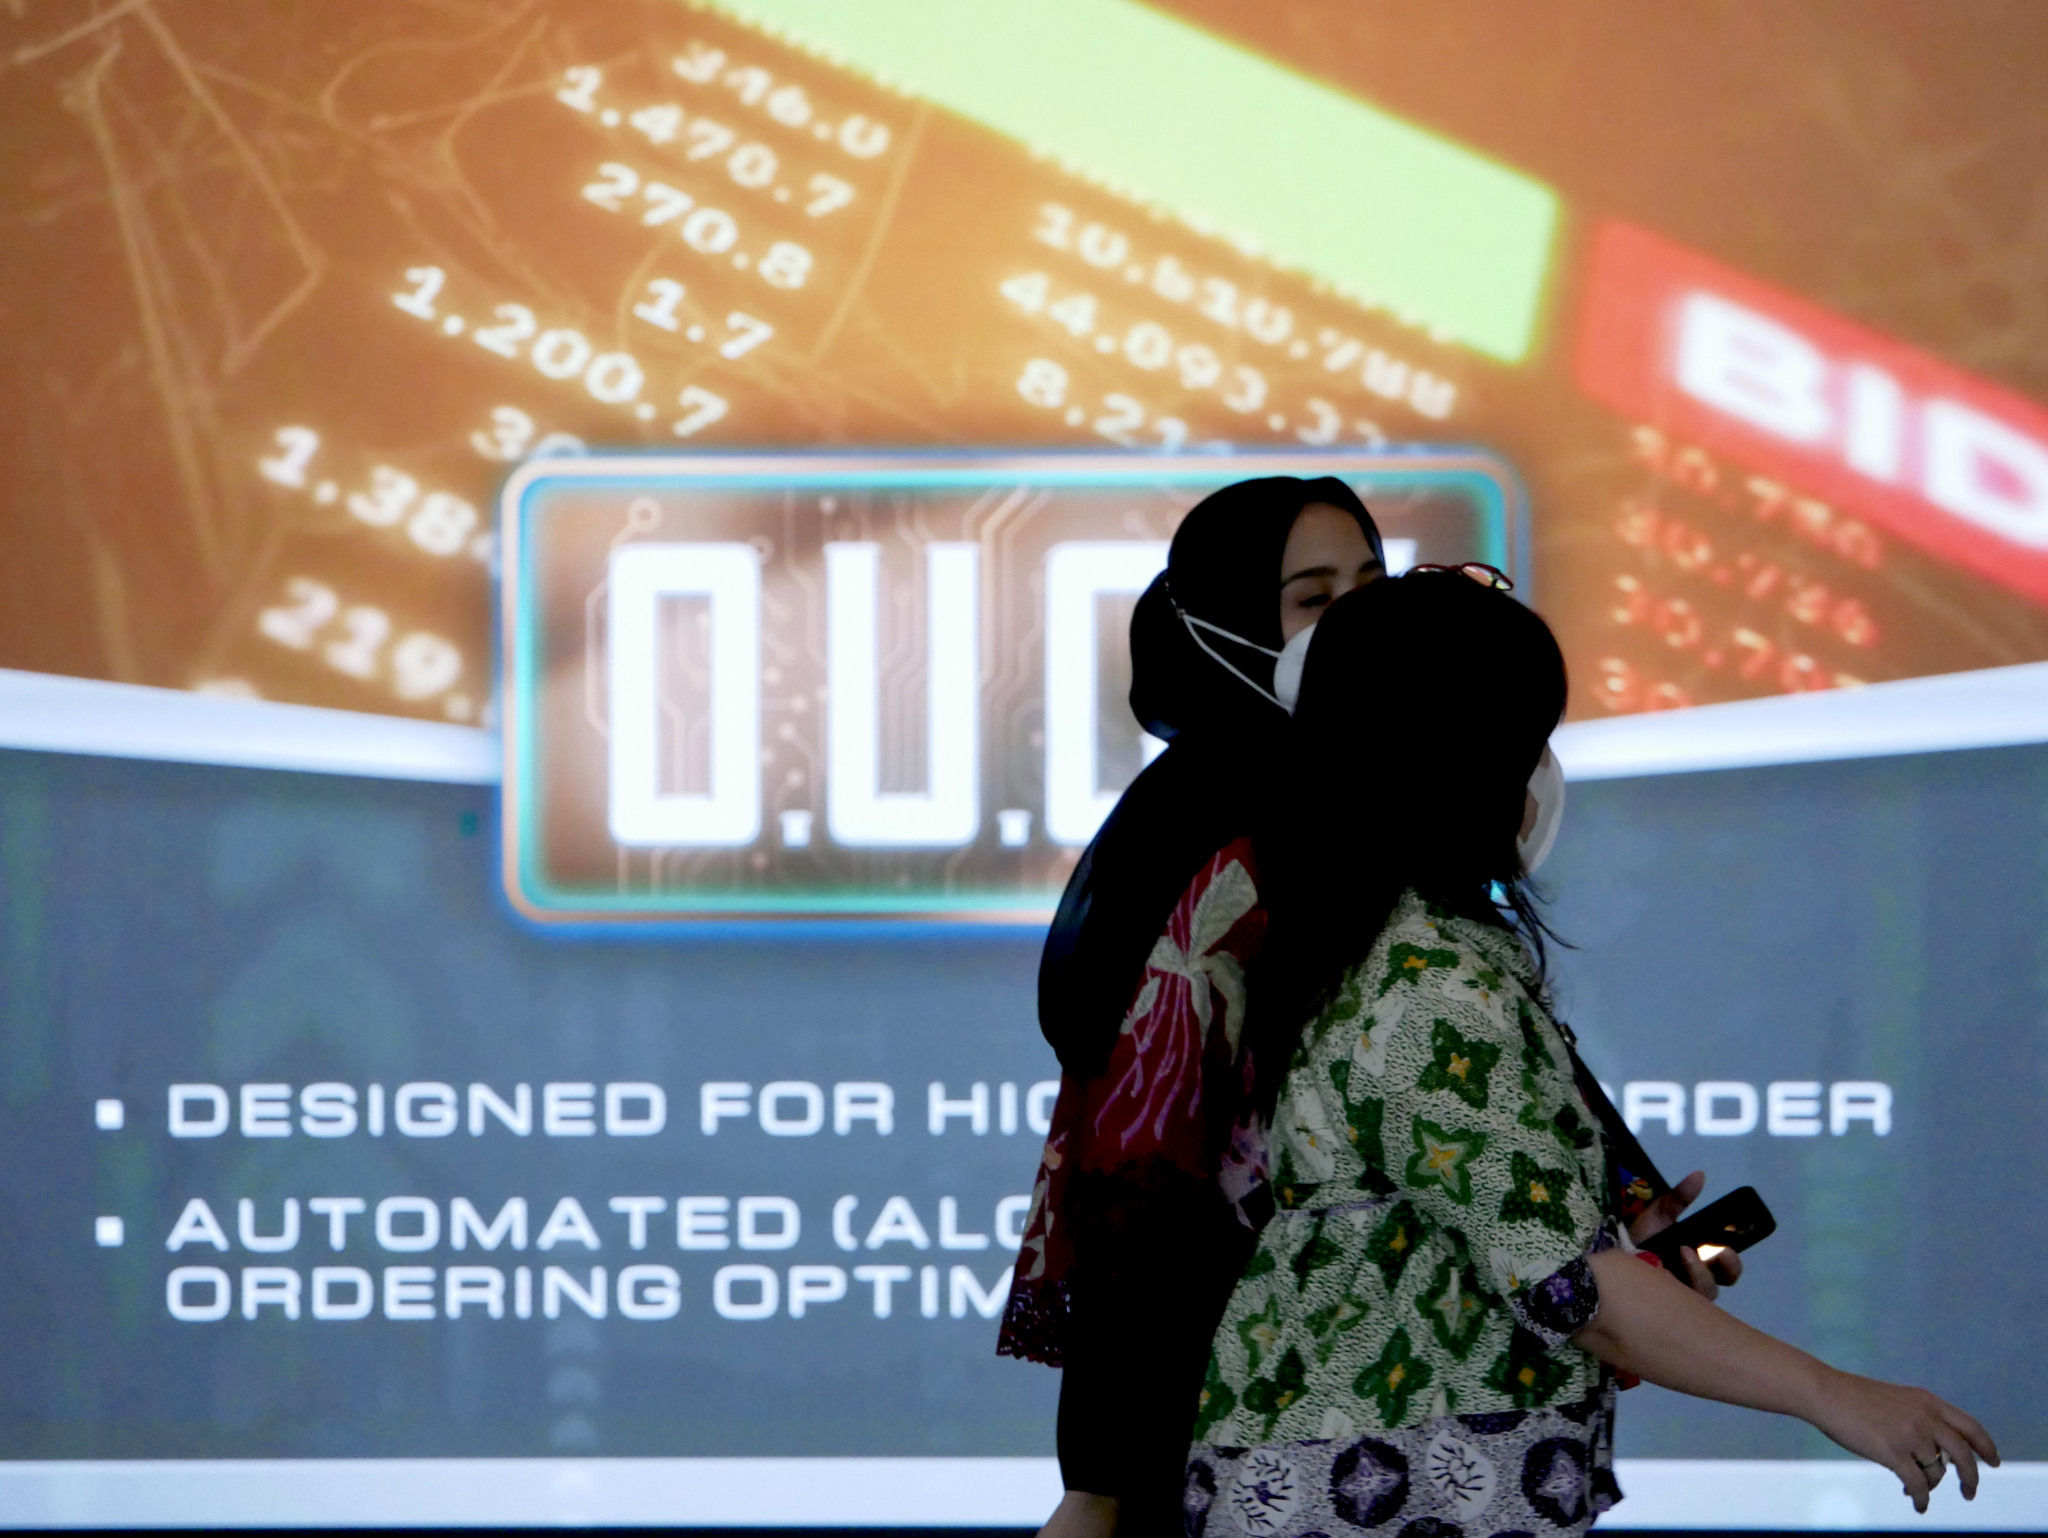 Karyawan beraktifitas dengan latar layar pergerakan indeks harga saham gabungan (IHSG) pada perdagangan perdana di gedung Bursa Efek Indonesia (BEI), Jakarta, Senin, 3 Januari 2022. Foto: Ismail Pohan/TrenAsia